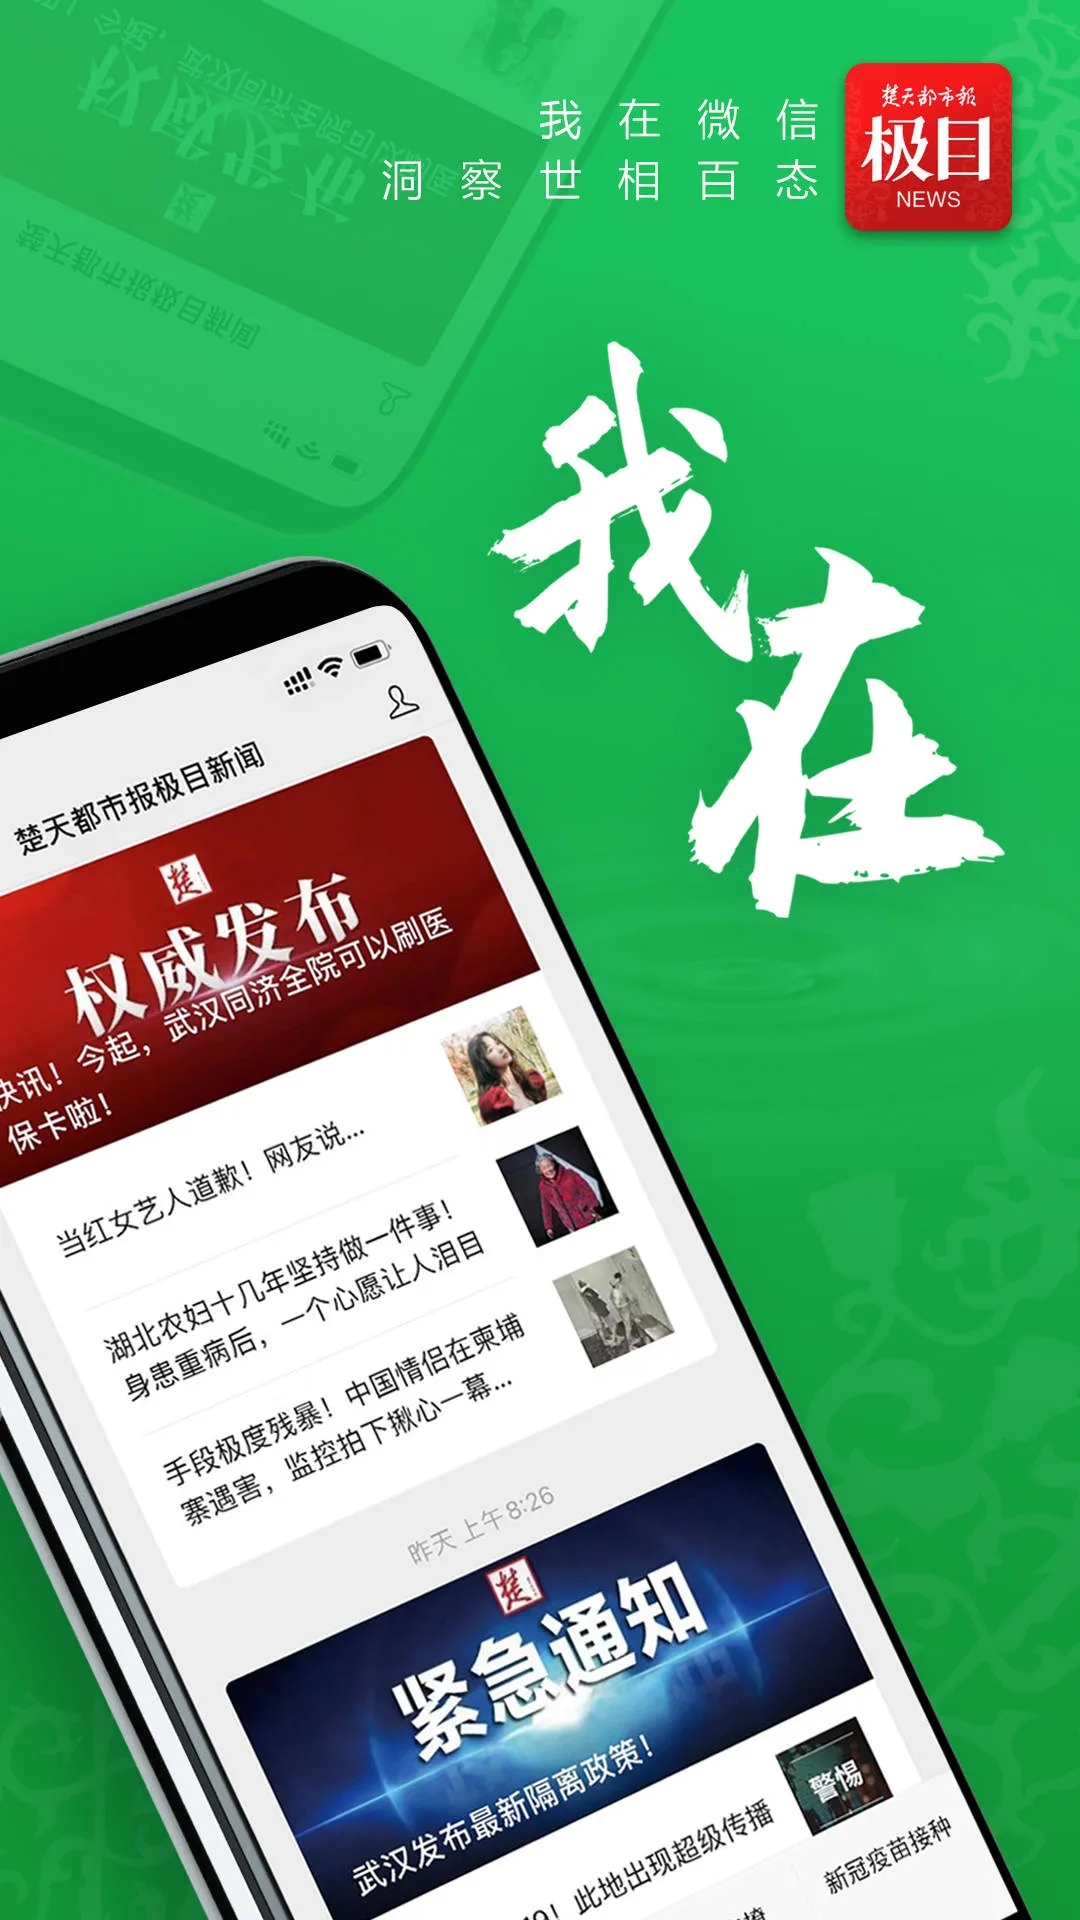 楚天都市报极目新闻App下载官方版图1: